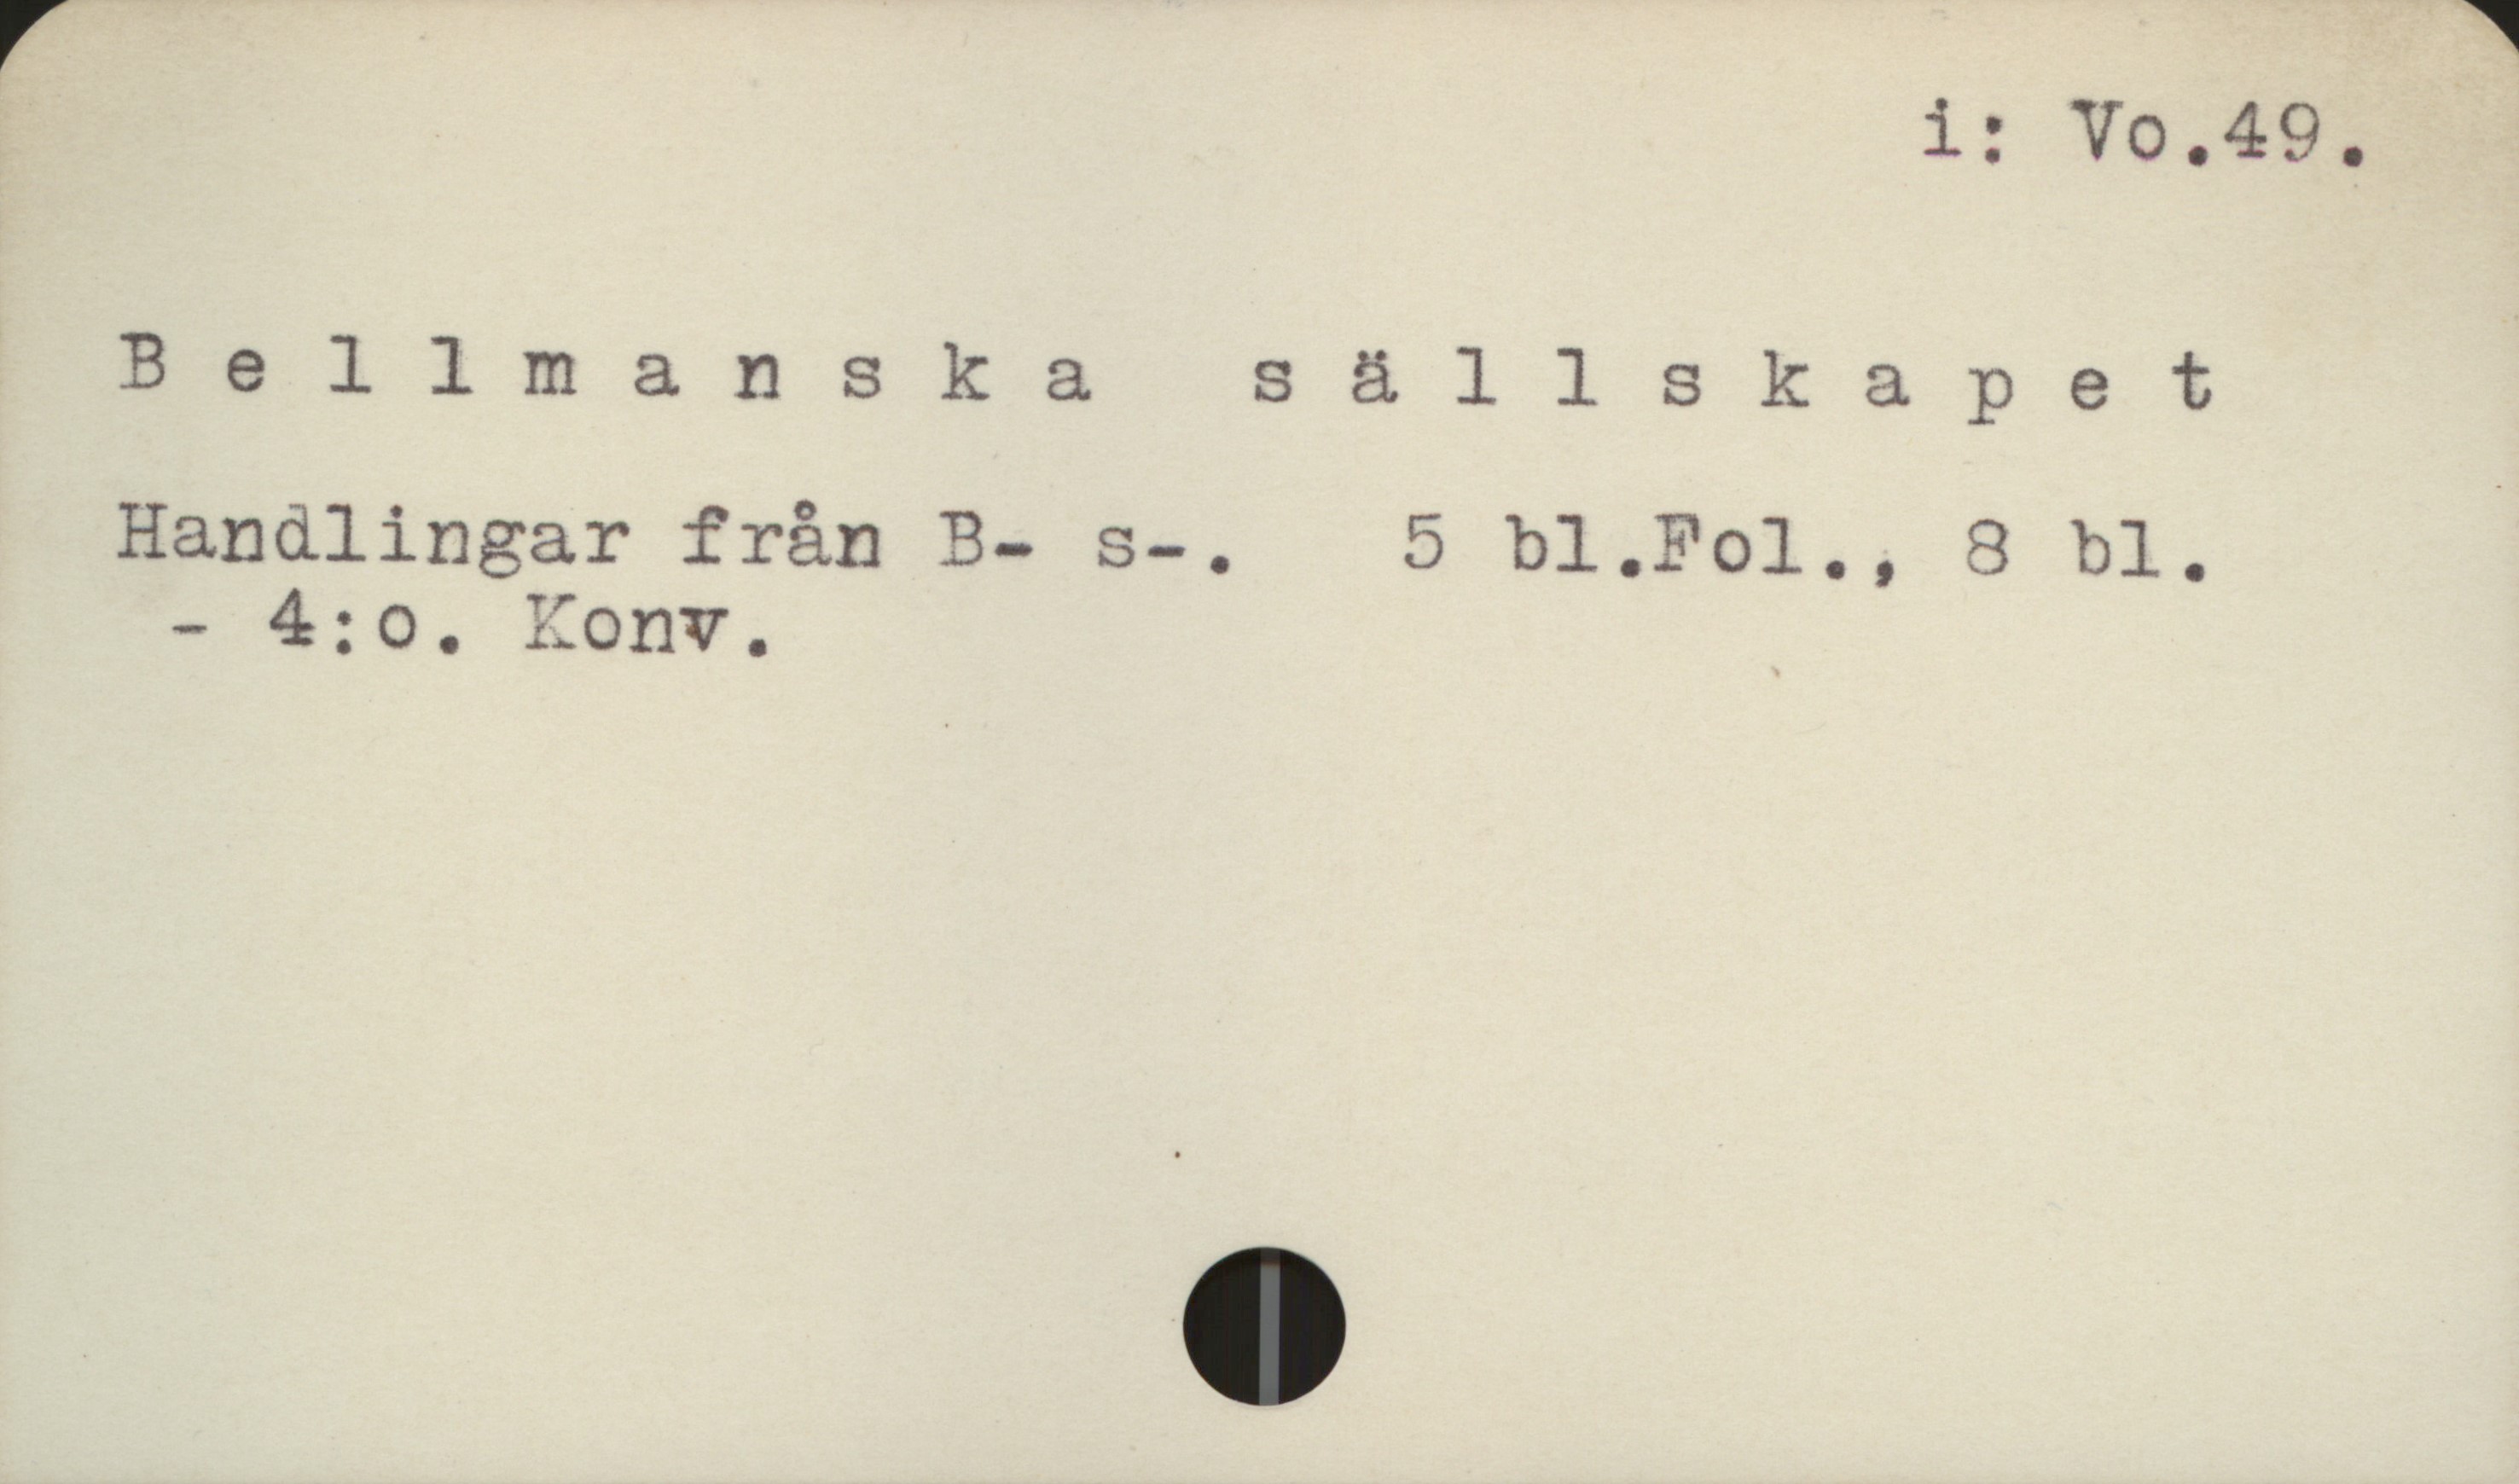 Bellmanska sällskapet i: Vo.49.
Bellmanska sällskapet
Handlingar från B- s-. - 5 bl. Fol., 8 bl. 
- 4:o. Konv.